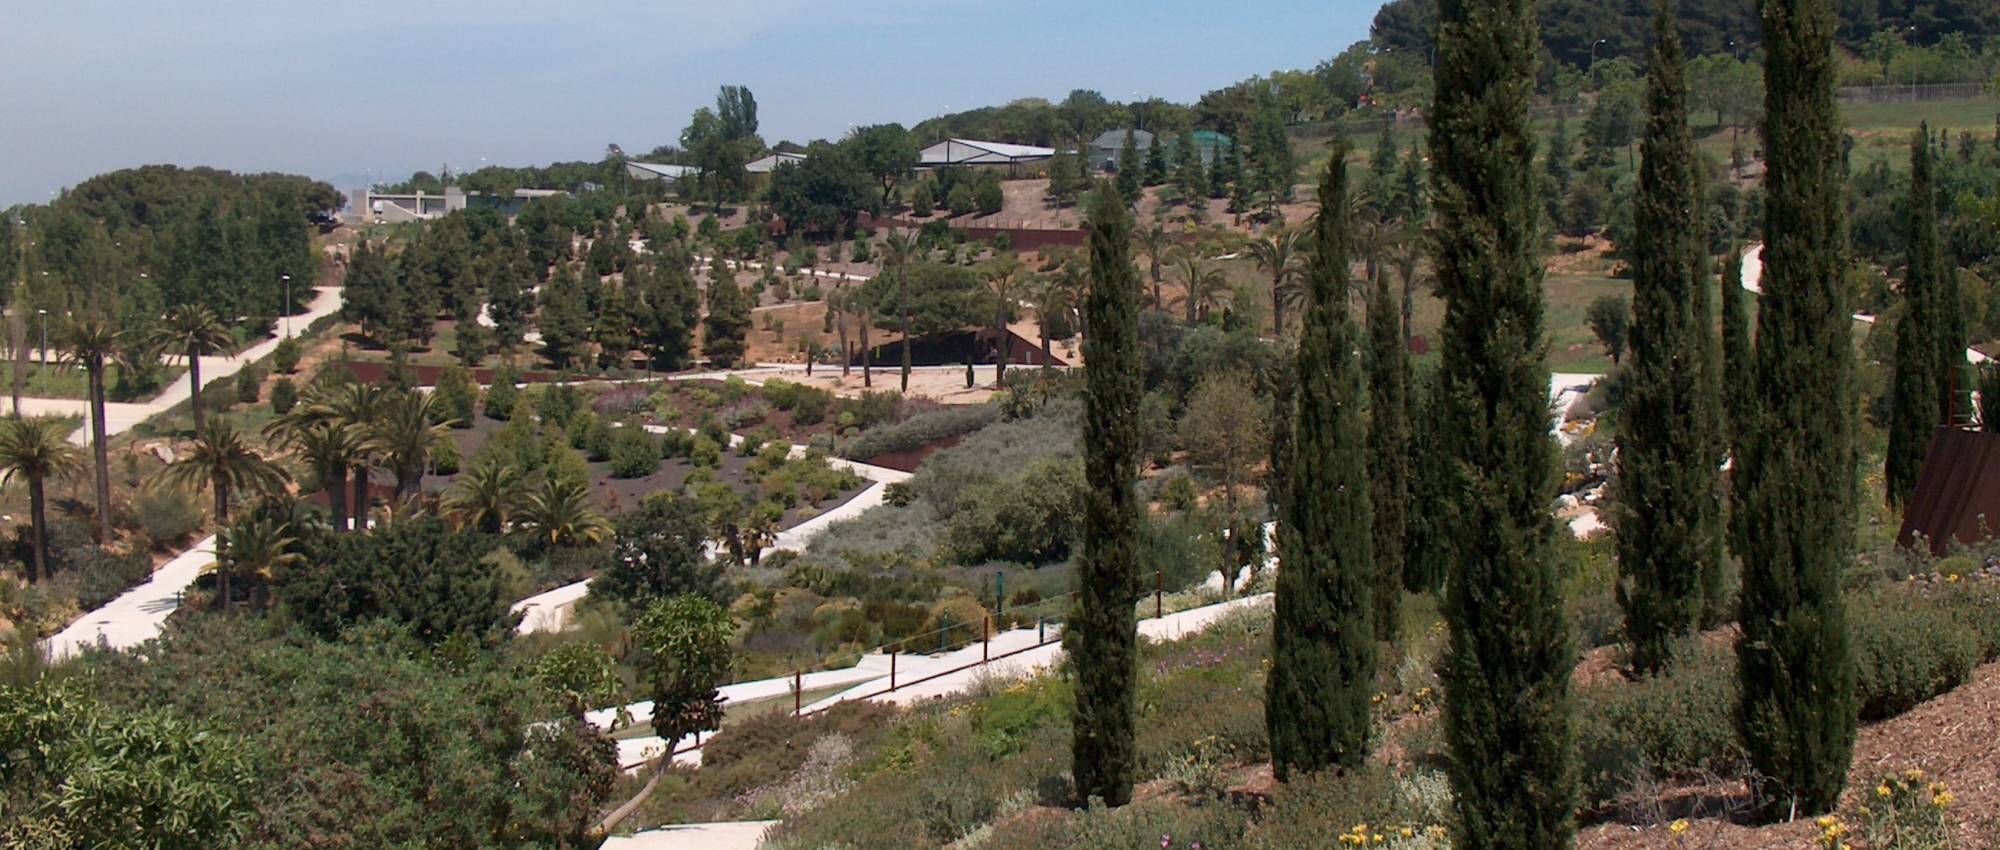 Jardín Botánico de Barcelona. Valérie75 / Wikimedia Commons. CC BY-SA 3.0